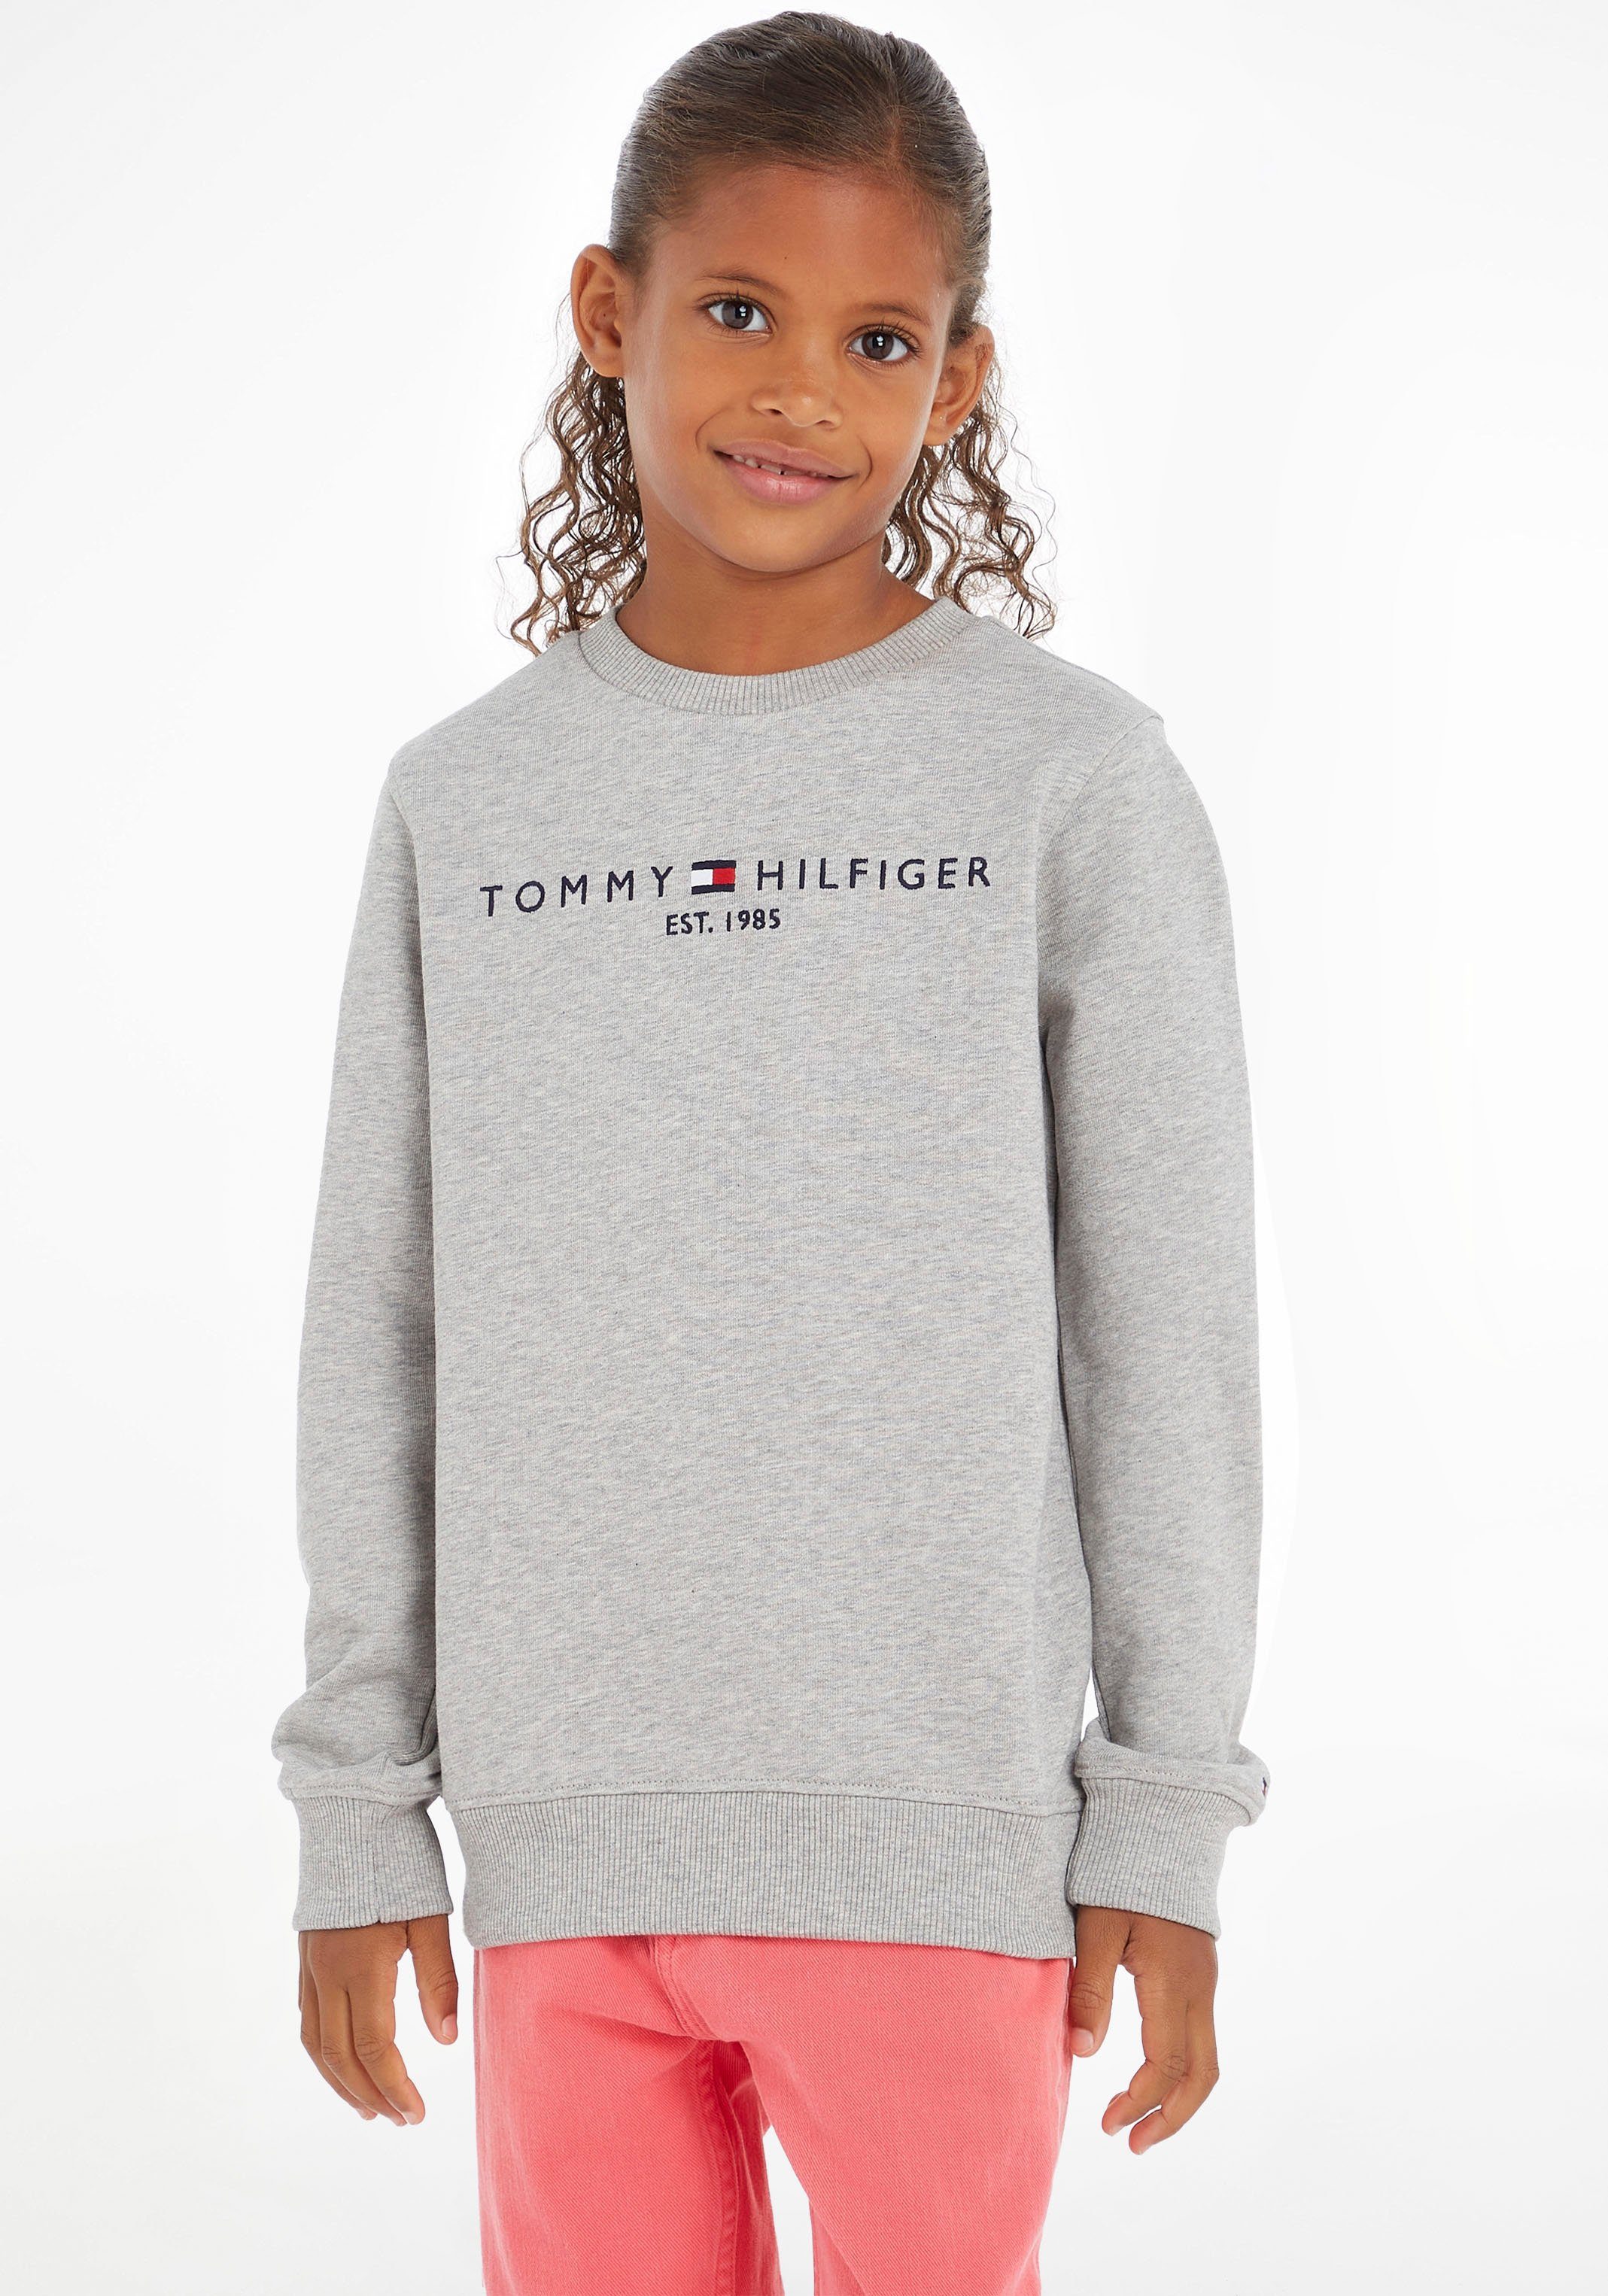 Sweatshirt HILFIGER und für Sweatshirt ESSENTIAL Hilfiger Tommy TOMMY von SWEATSHIRT, Mädchen Jungen